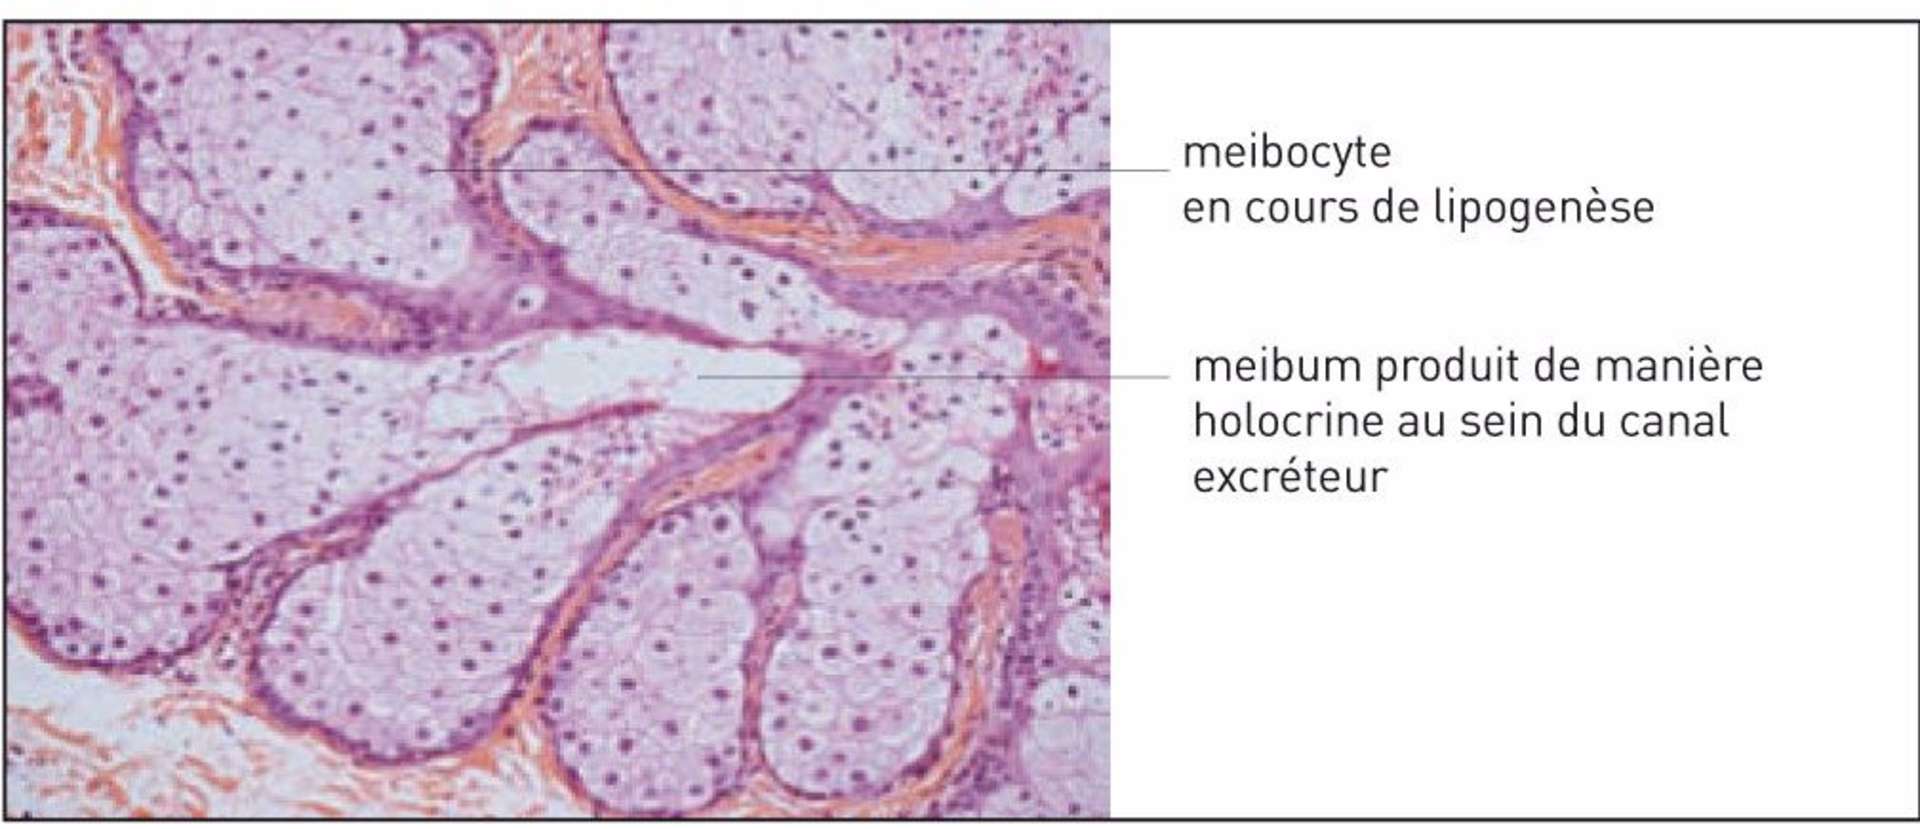 Figure 1. Coupe histologique après coloration HES grossissement x 20 montrant les glandes de Meibomius composées de meibocytes regroupés en acini (Léger F, Morice C). 
